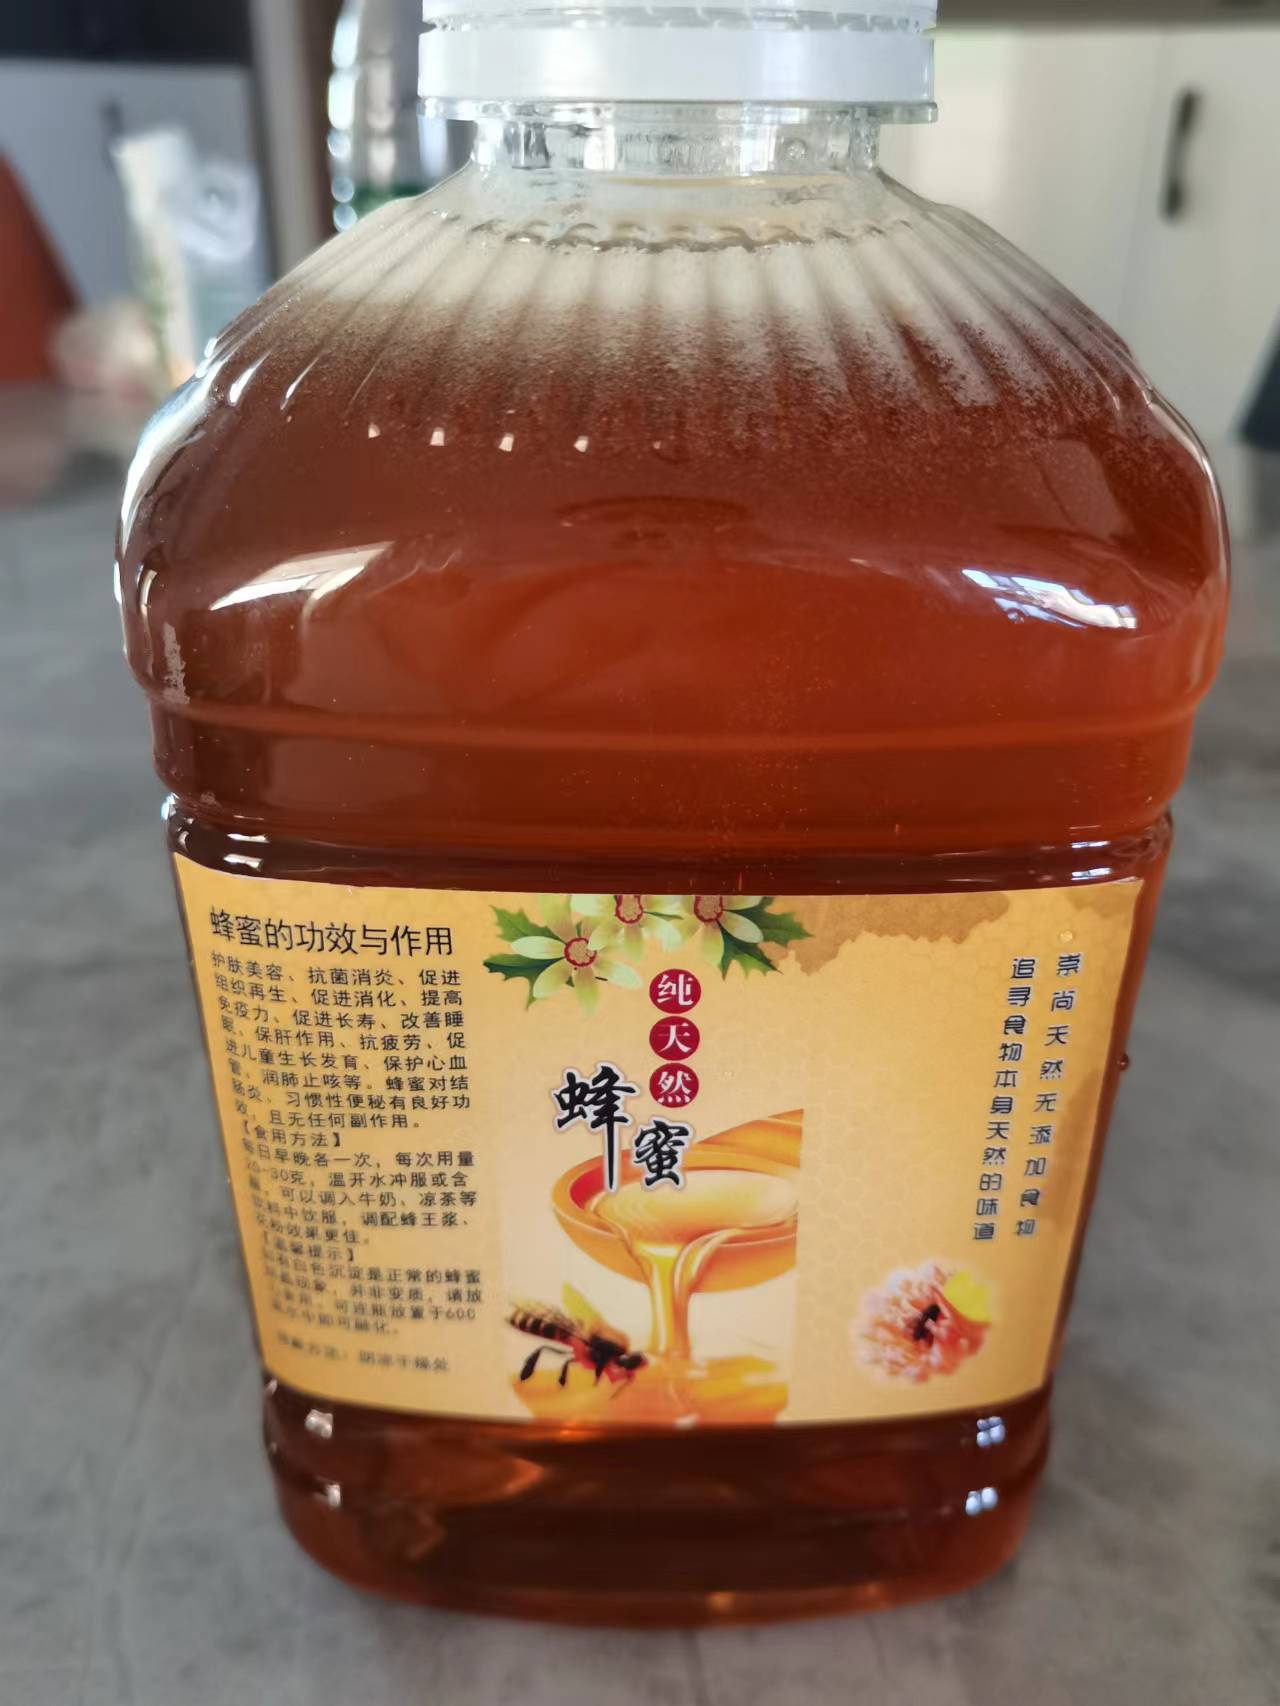 钟祥市百花蜜土特产 蜂蜜批发2斤装农家自产土蜂蜜纯正天然蜂蜜